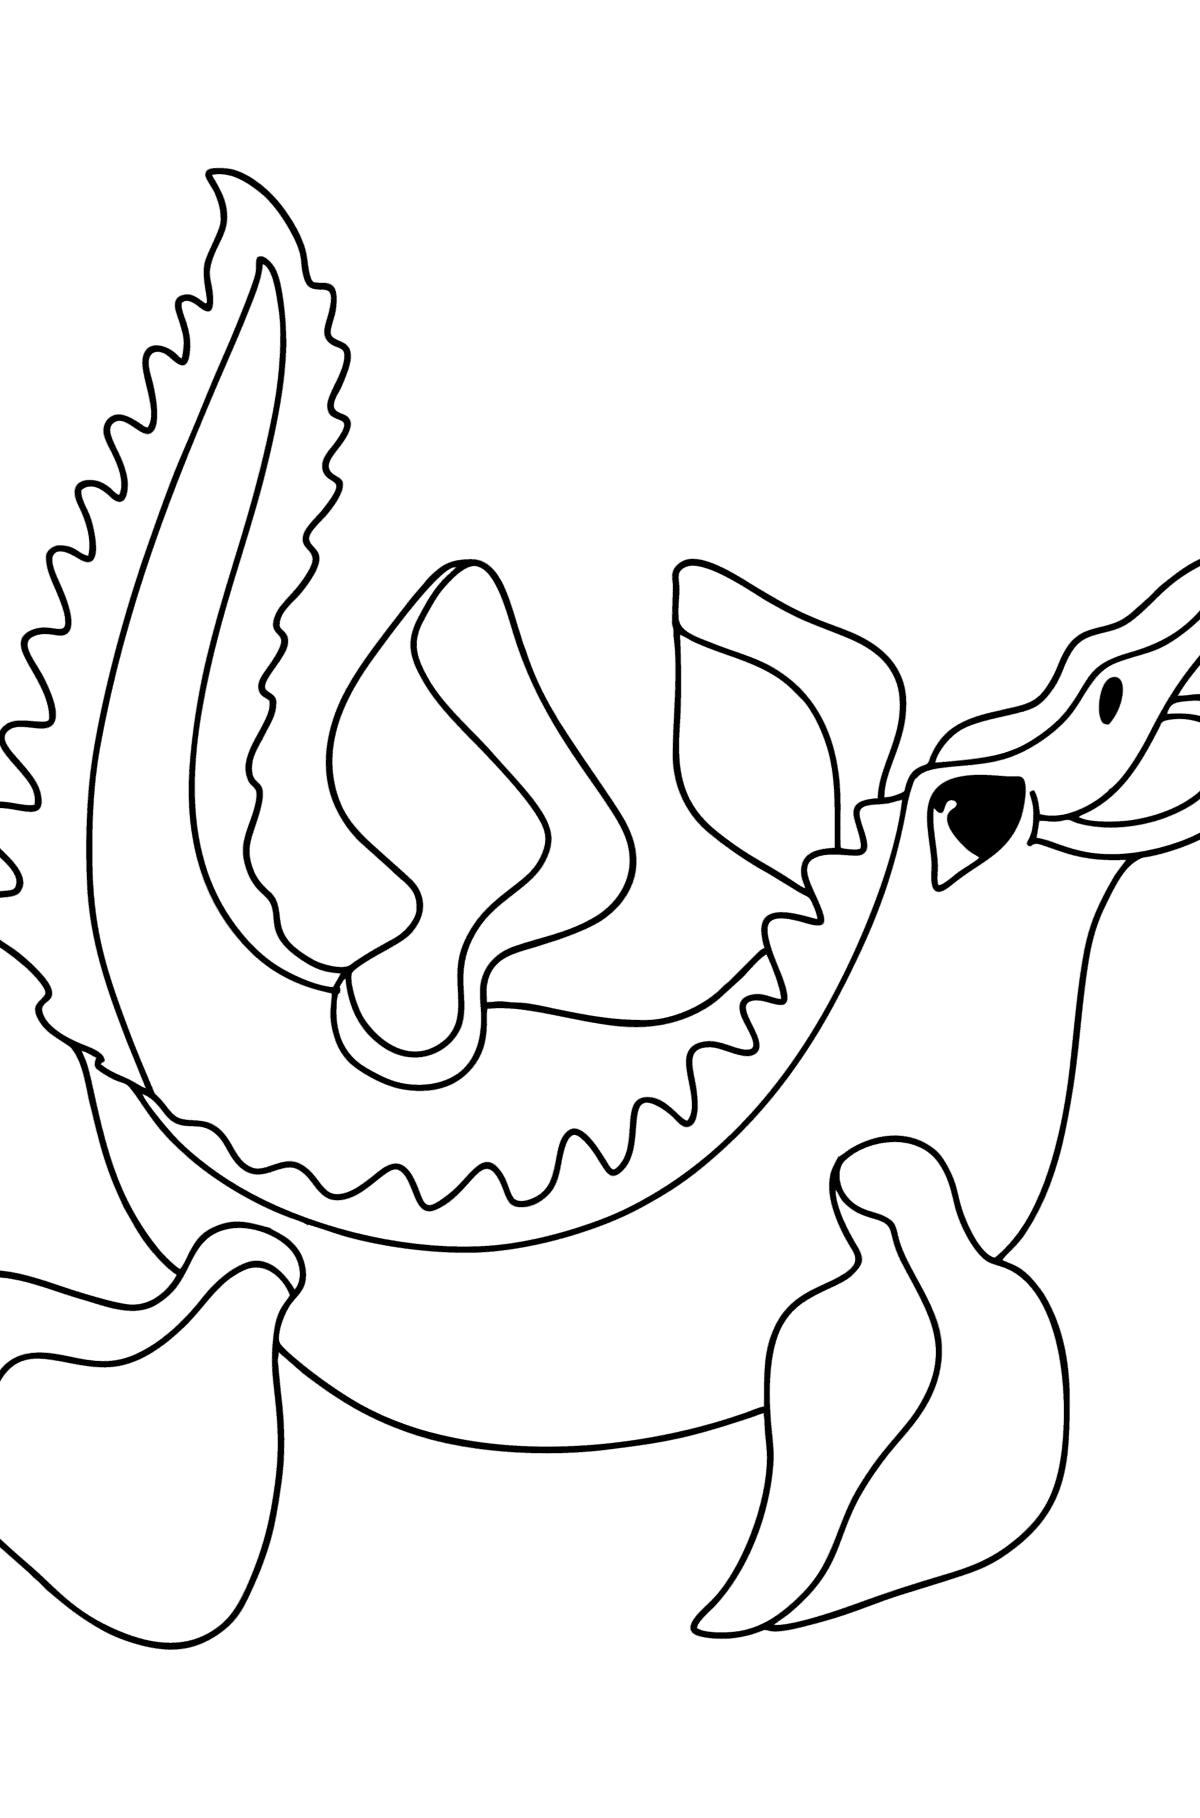 Tegning til fargelegging mosasaurus - Tegninger til fargelegging for barn